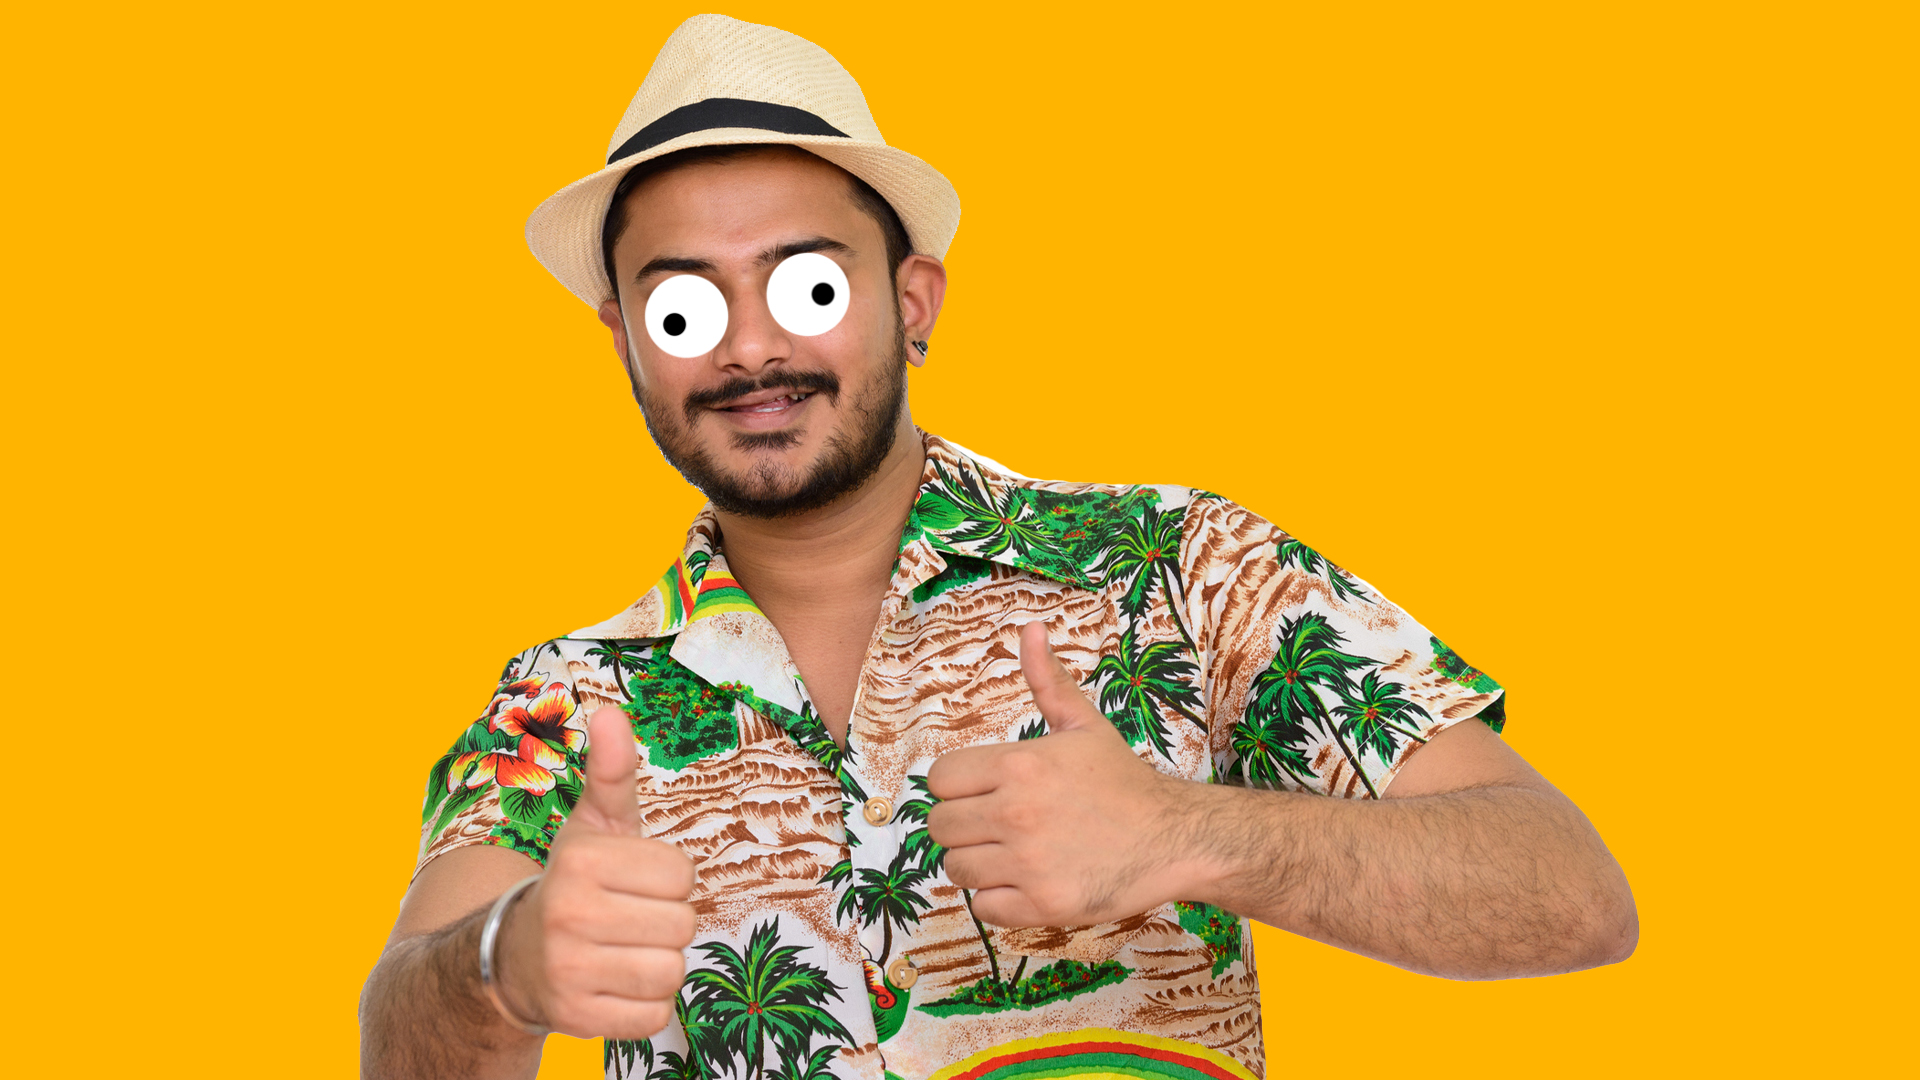 A man wearing a Hawaiian shirt and hat